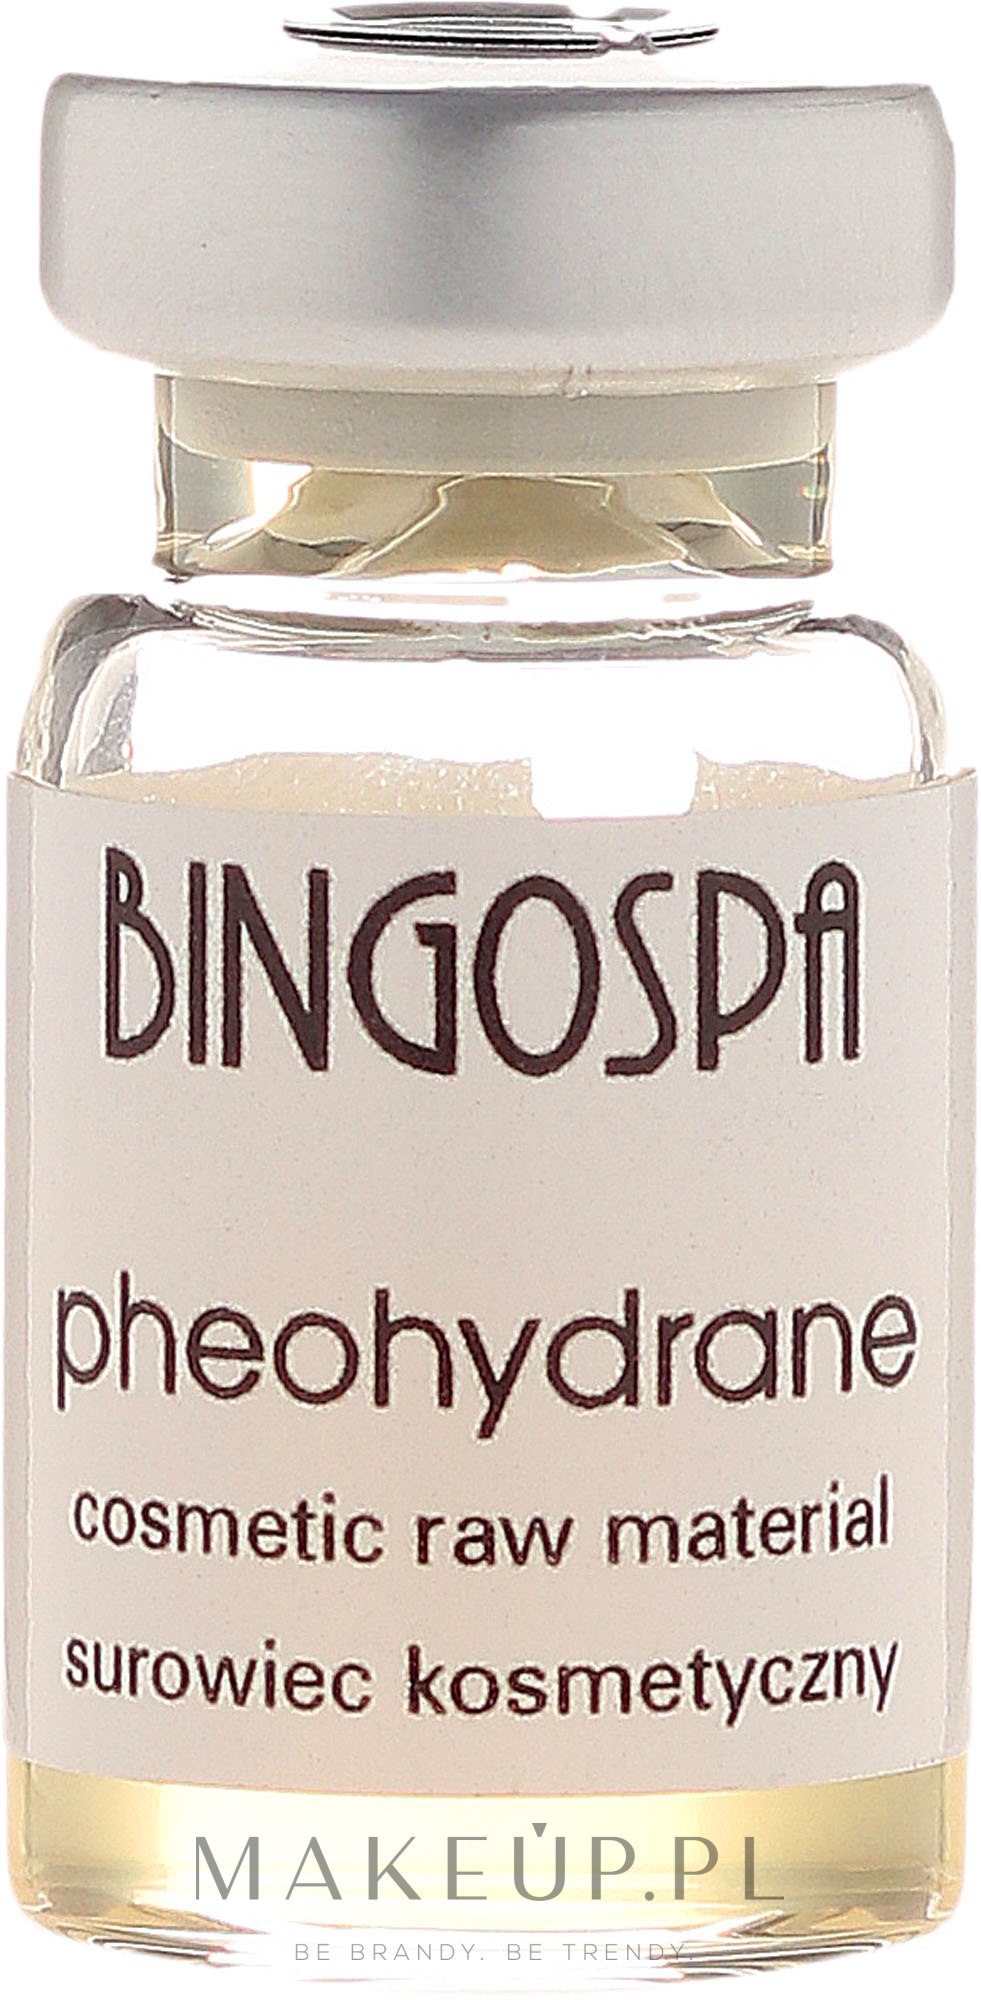 Pheohydrane - BingoSpa — Zdjęcie 5 ml